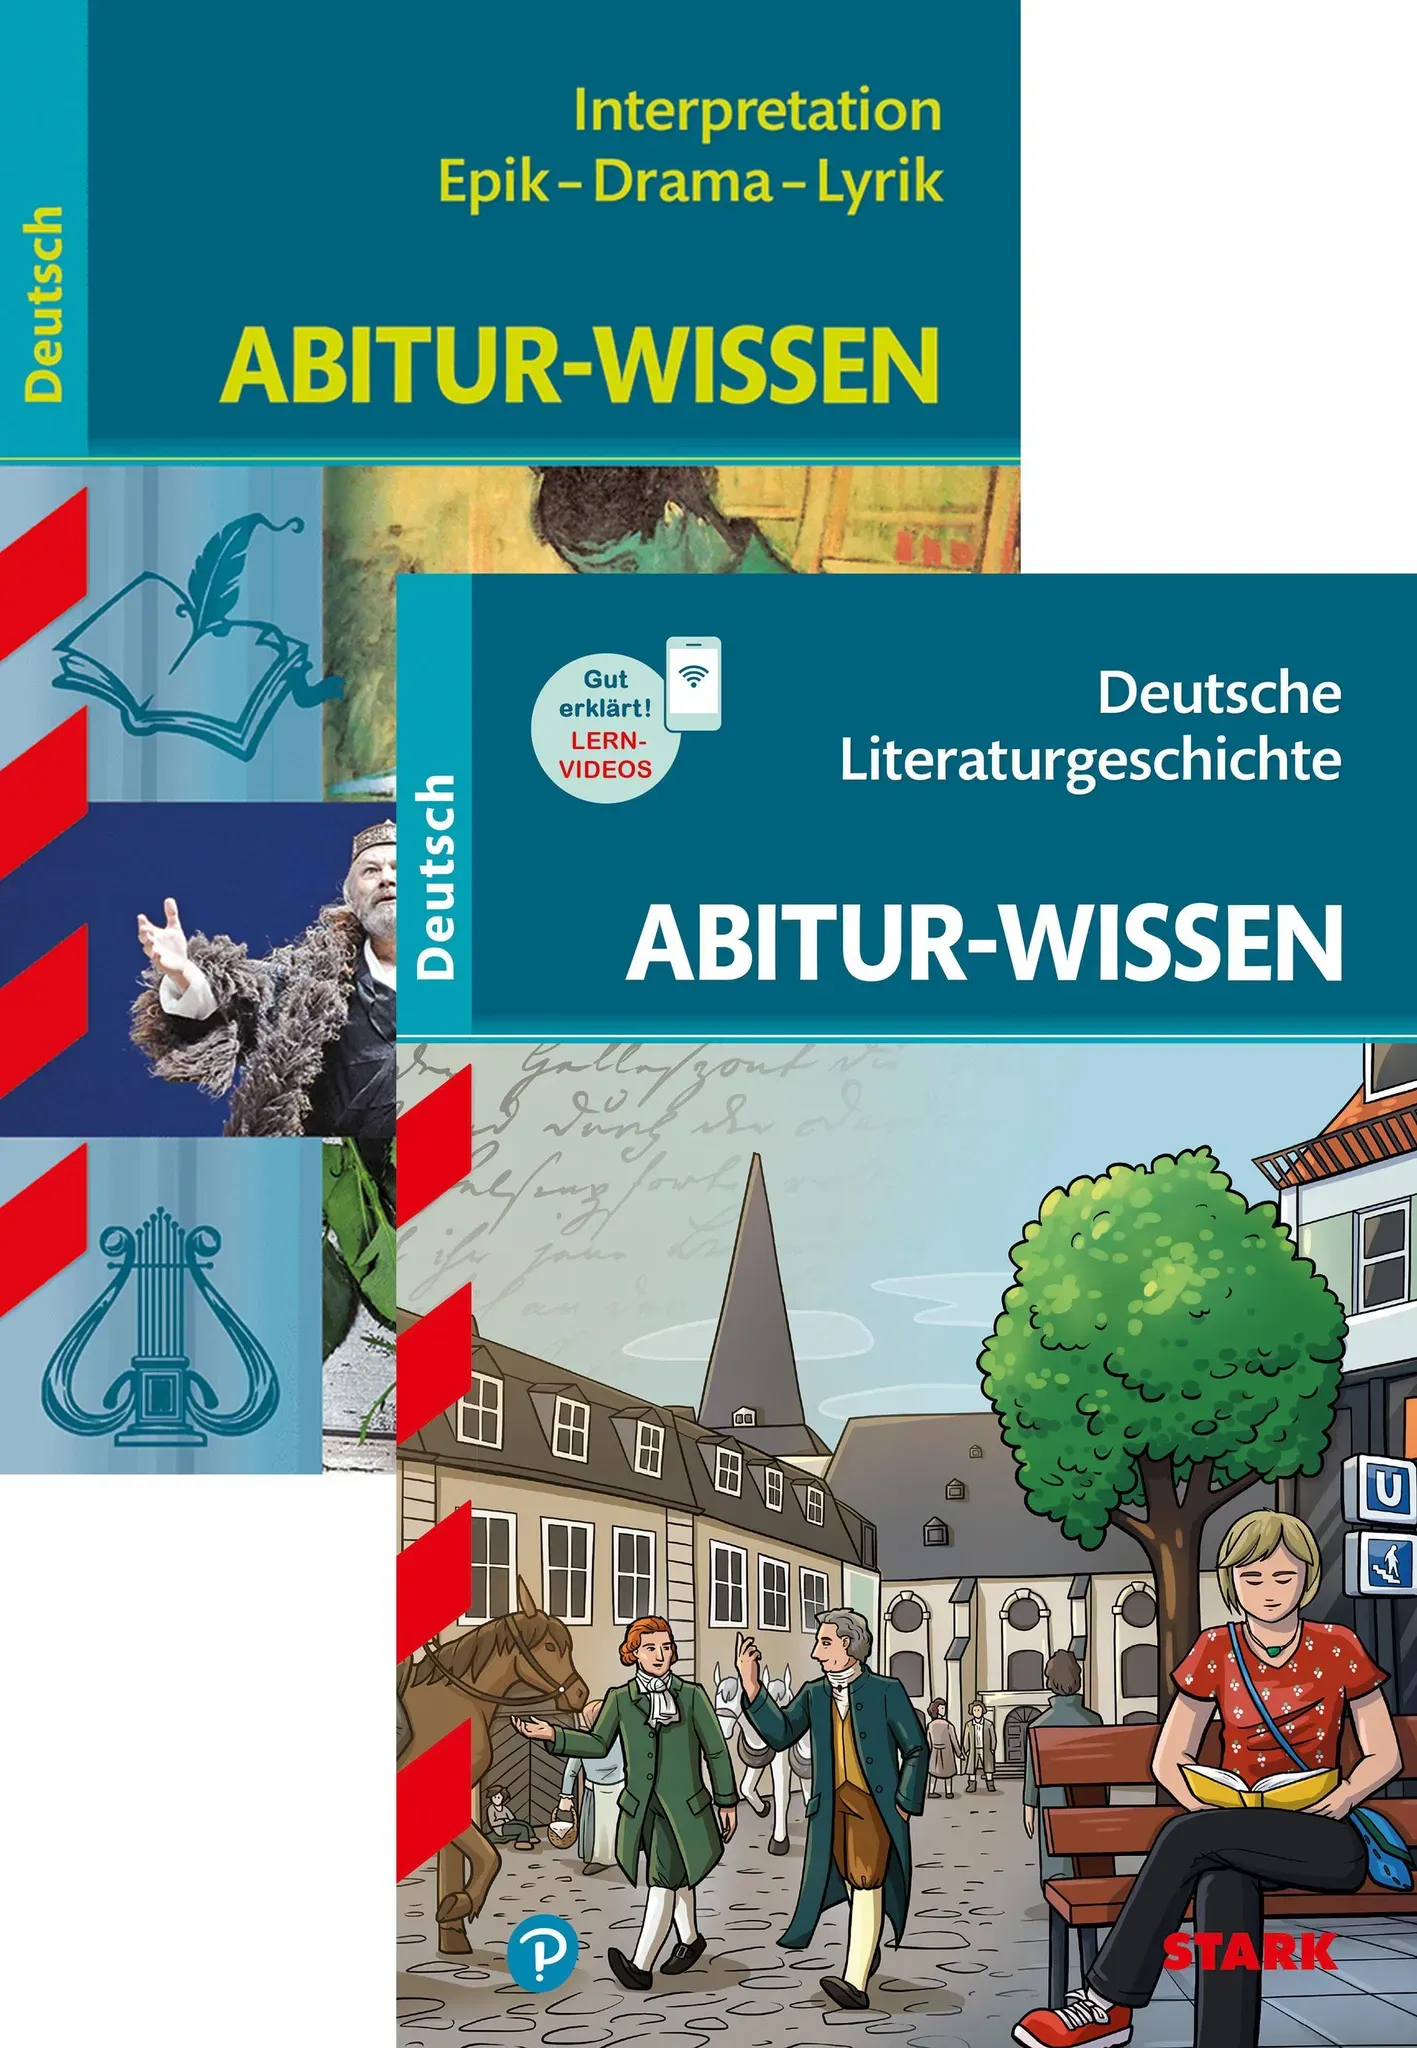 Abitur-Wissen Deutsch - Literaturgeschichte + Interpretationen Epik, Drama, Lyrik, Schulbücher